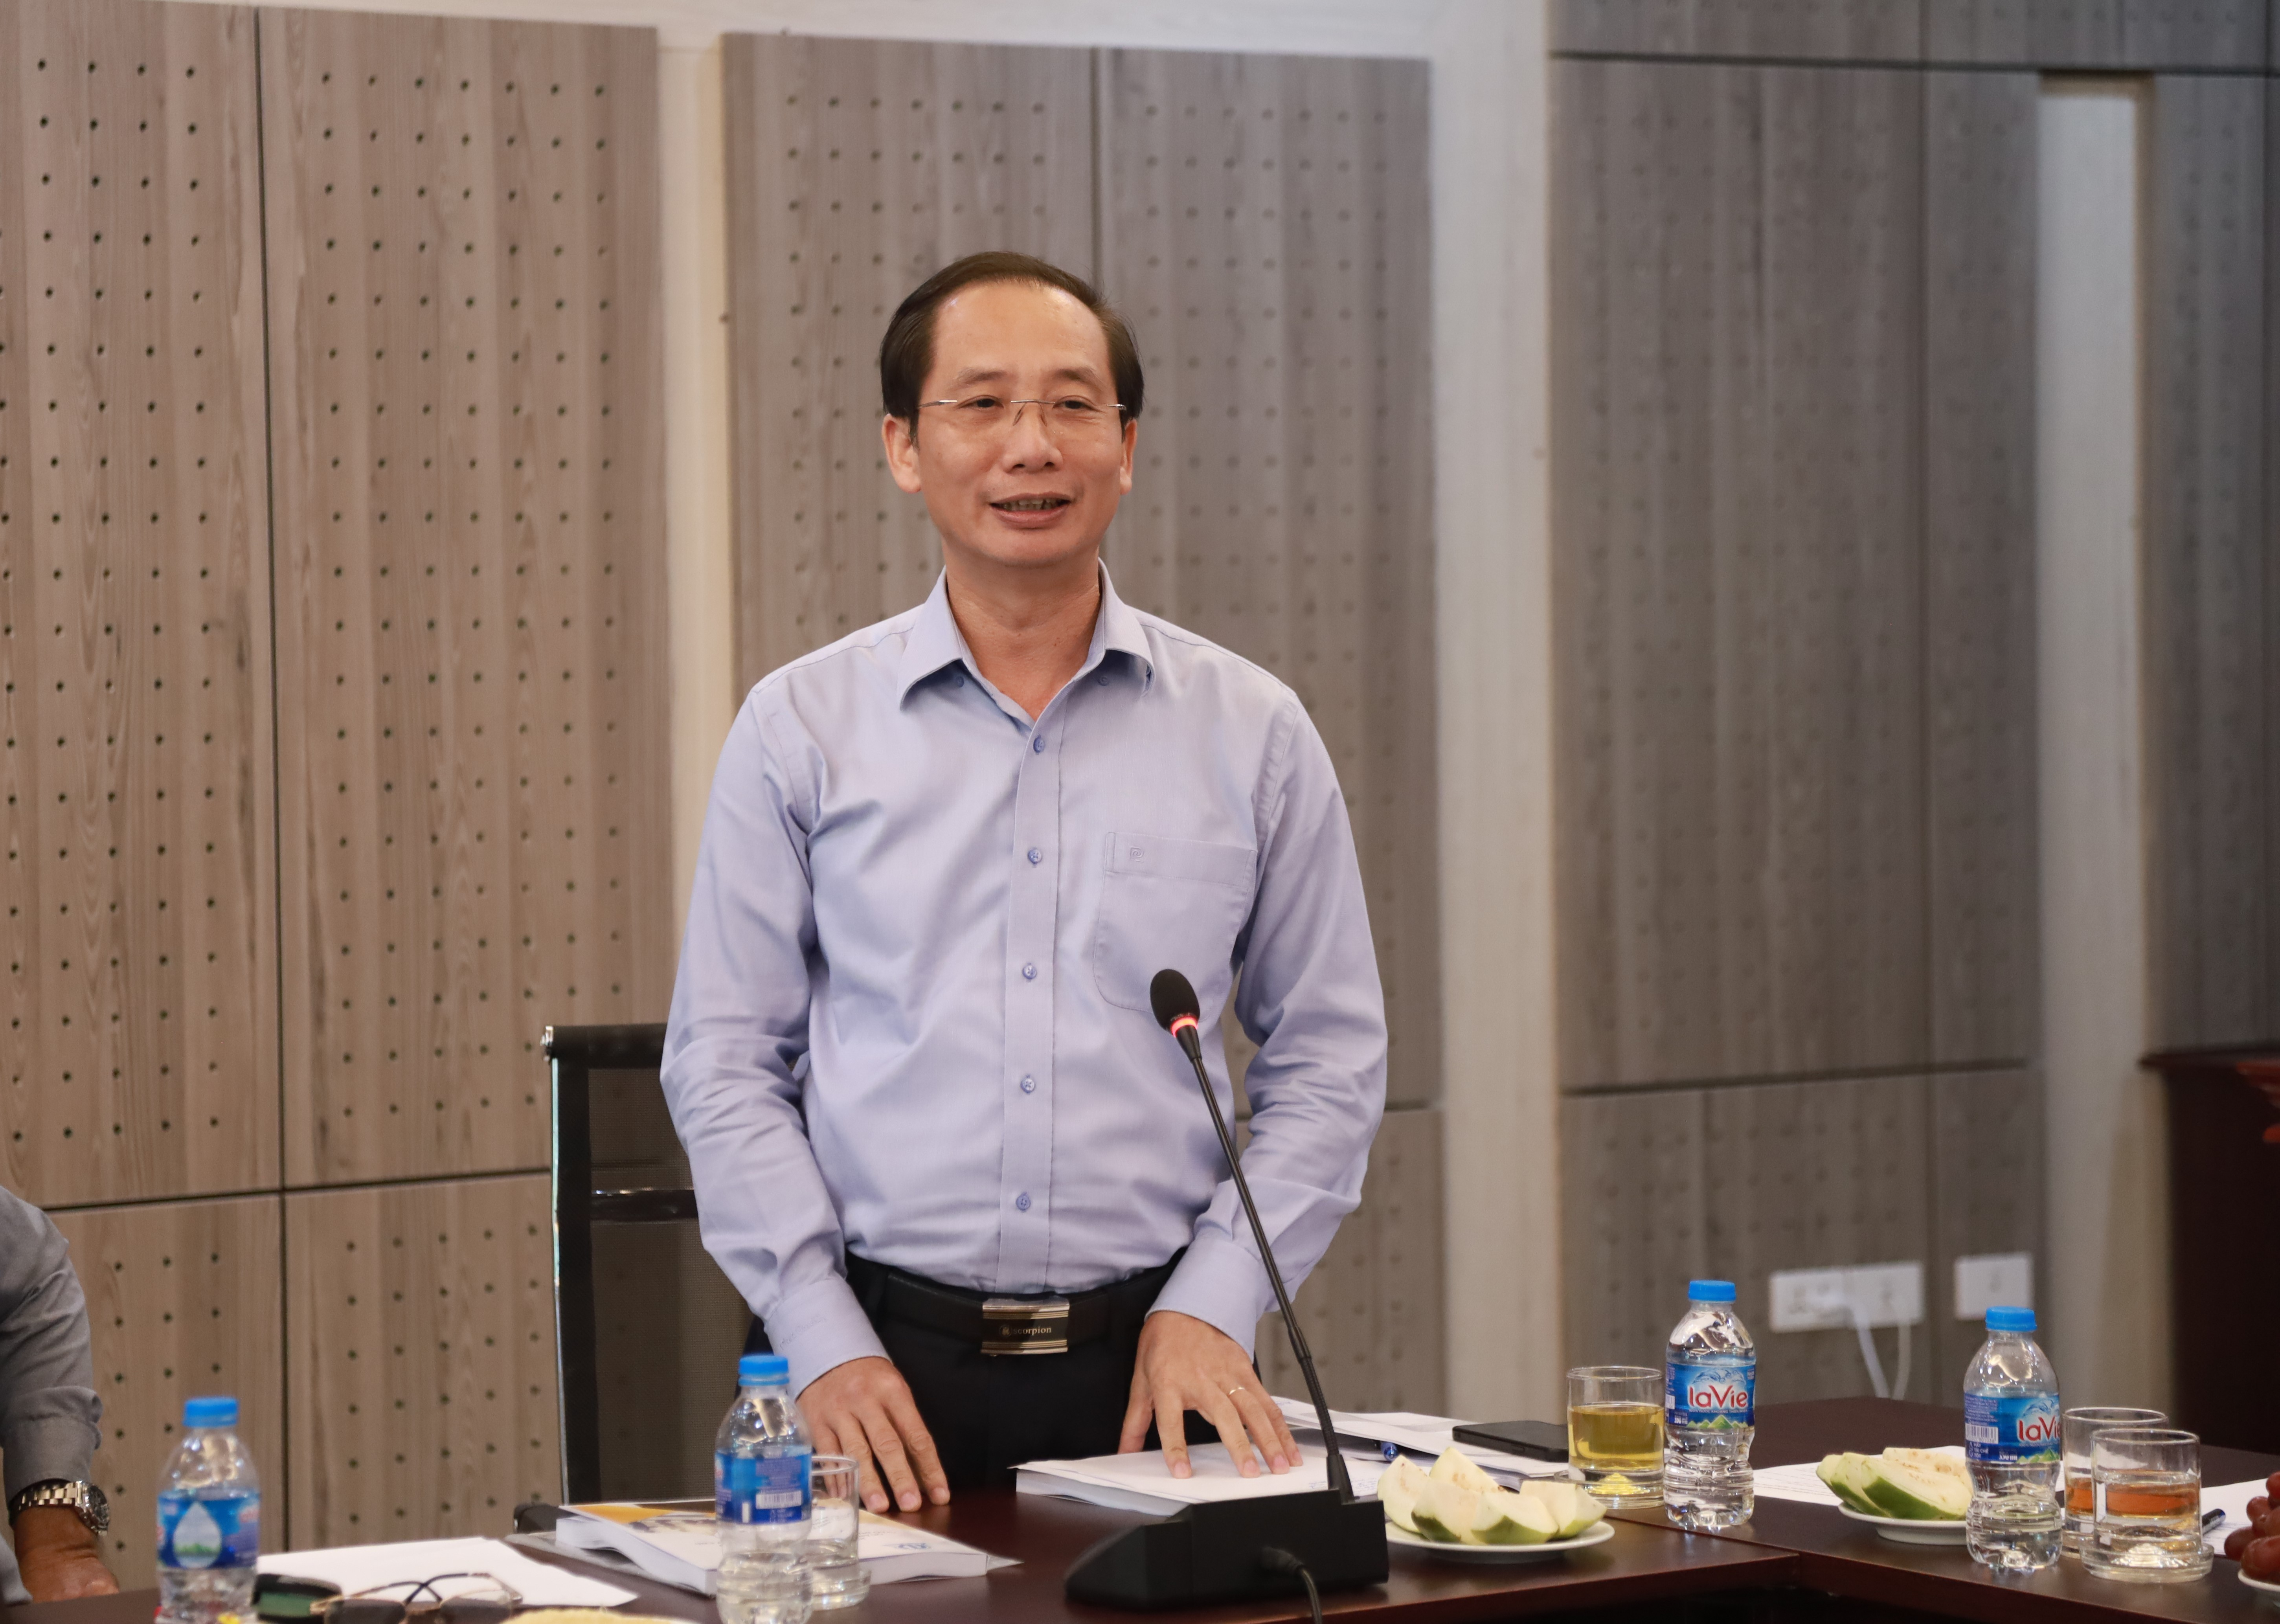 PGS. TS. Nguyễn Bá Chiến, Bí thư Đảng ủy, Hiệu trưởng Nhà trường phát biểu tại Hội thảo theo góc nhìn của nhà quản lý.